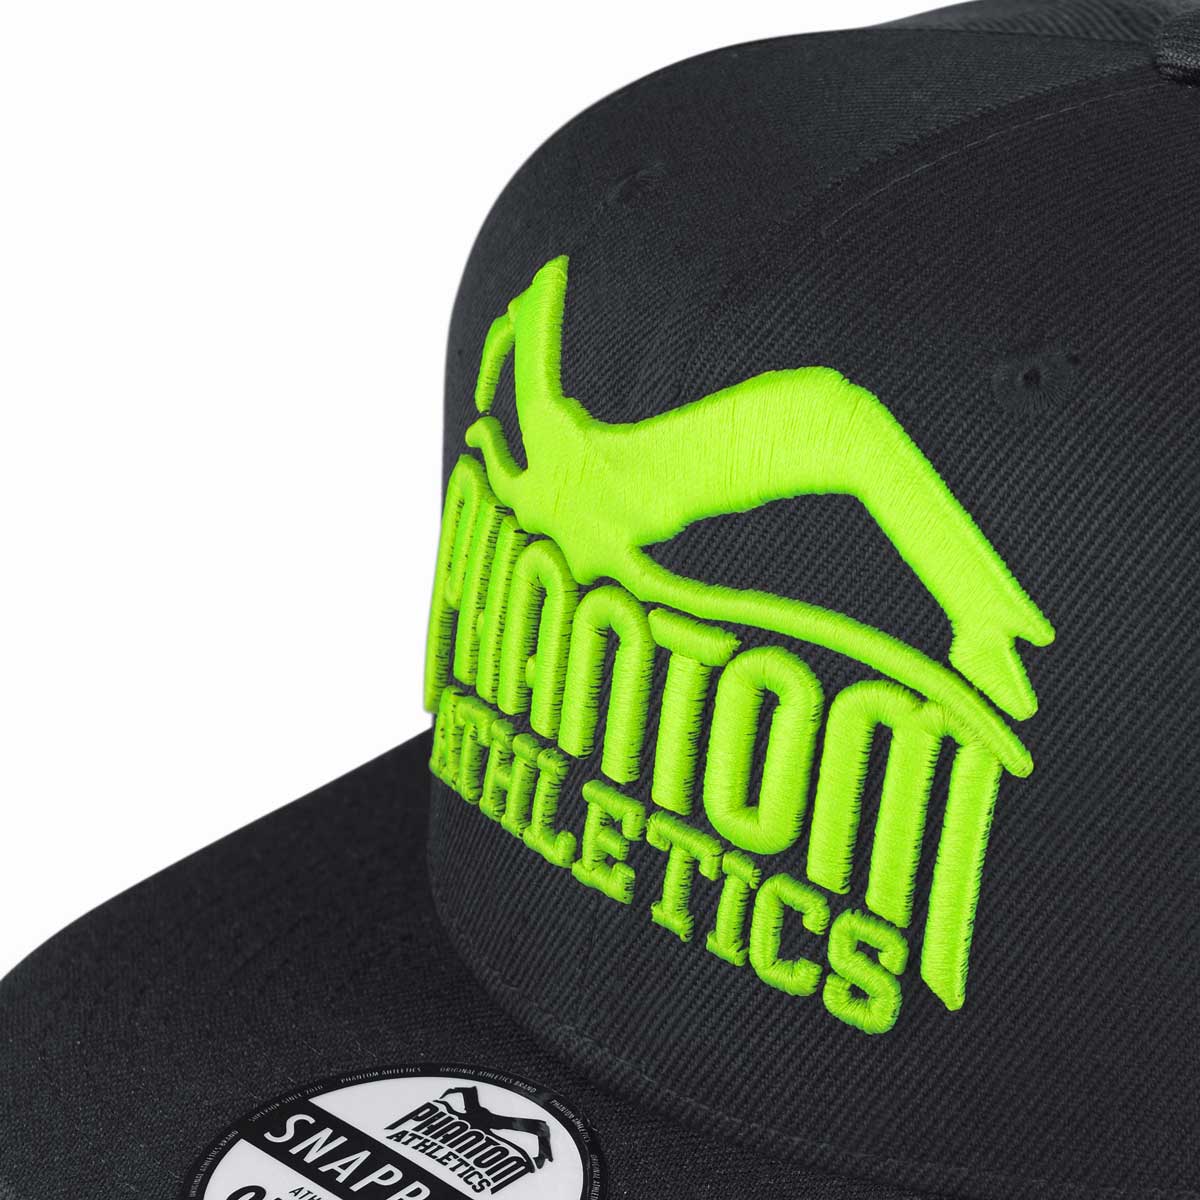 Phantom Cap für Kampfsportler. Schwarz/Neon Basecap mit flachem Schirm und hochwertig gesticktem Phantom Athletics Logo. Ideal für alle MMA Kämpfer, Boxer, BJJ Kämpfer, Thaiboxer oder Kickboxer.